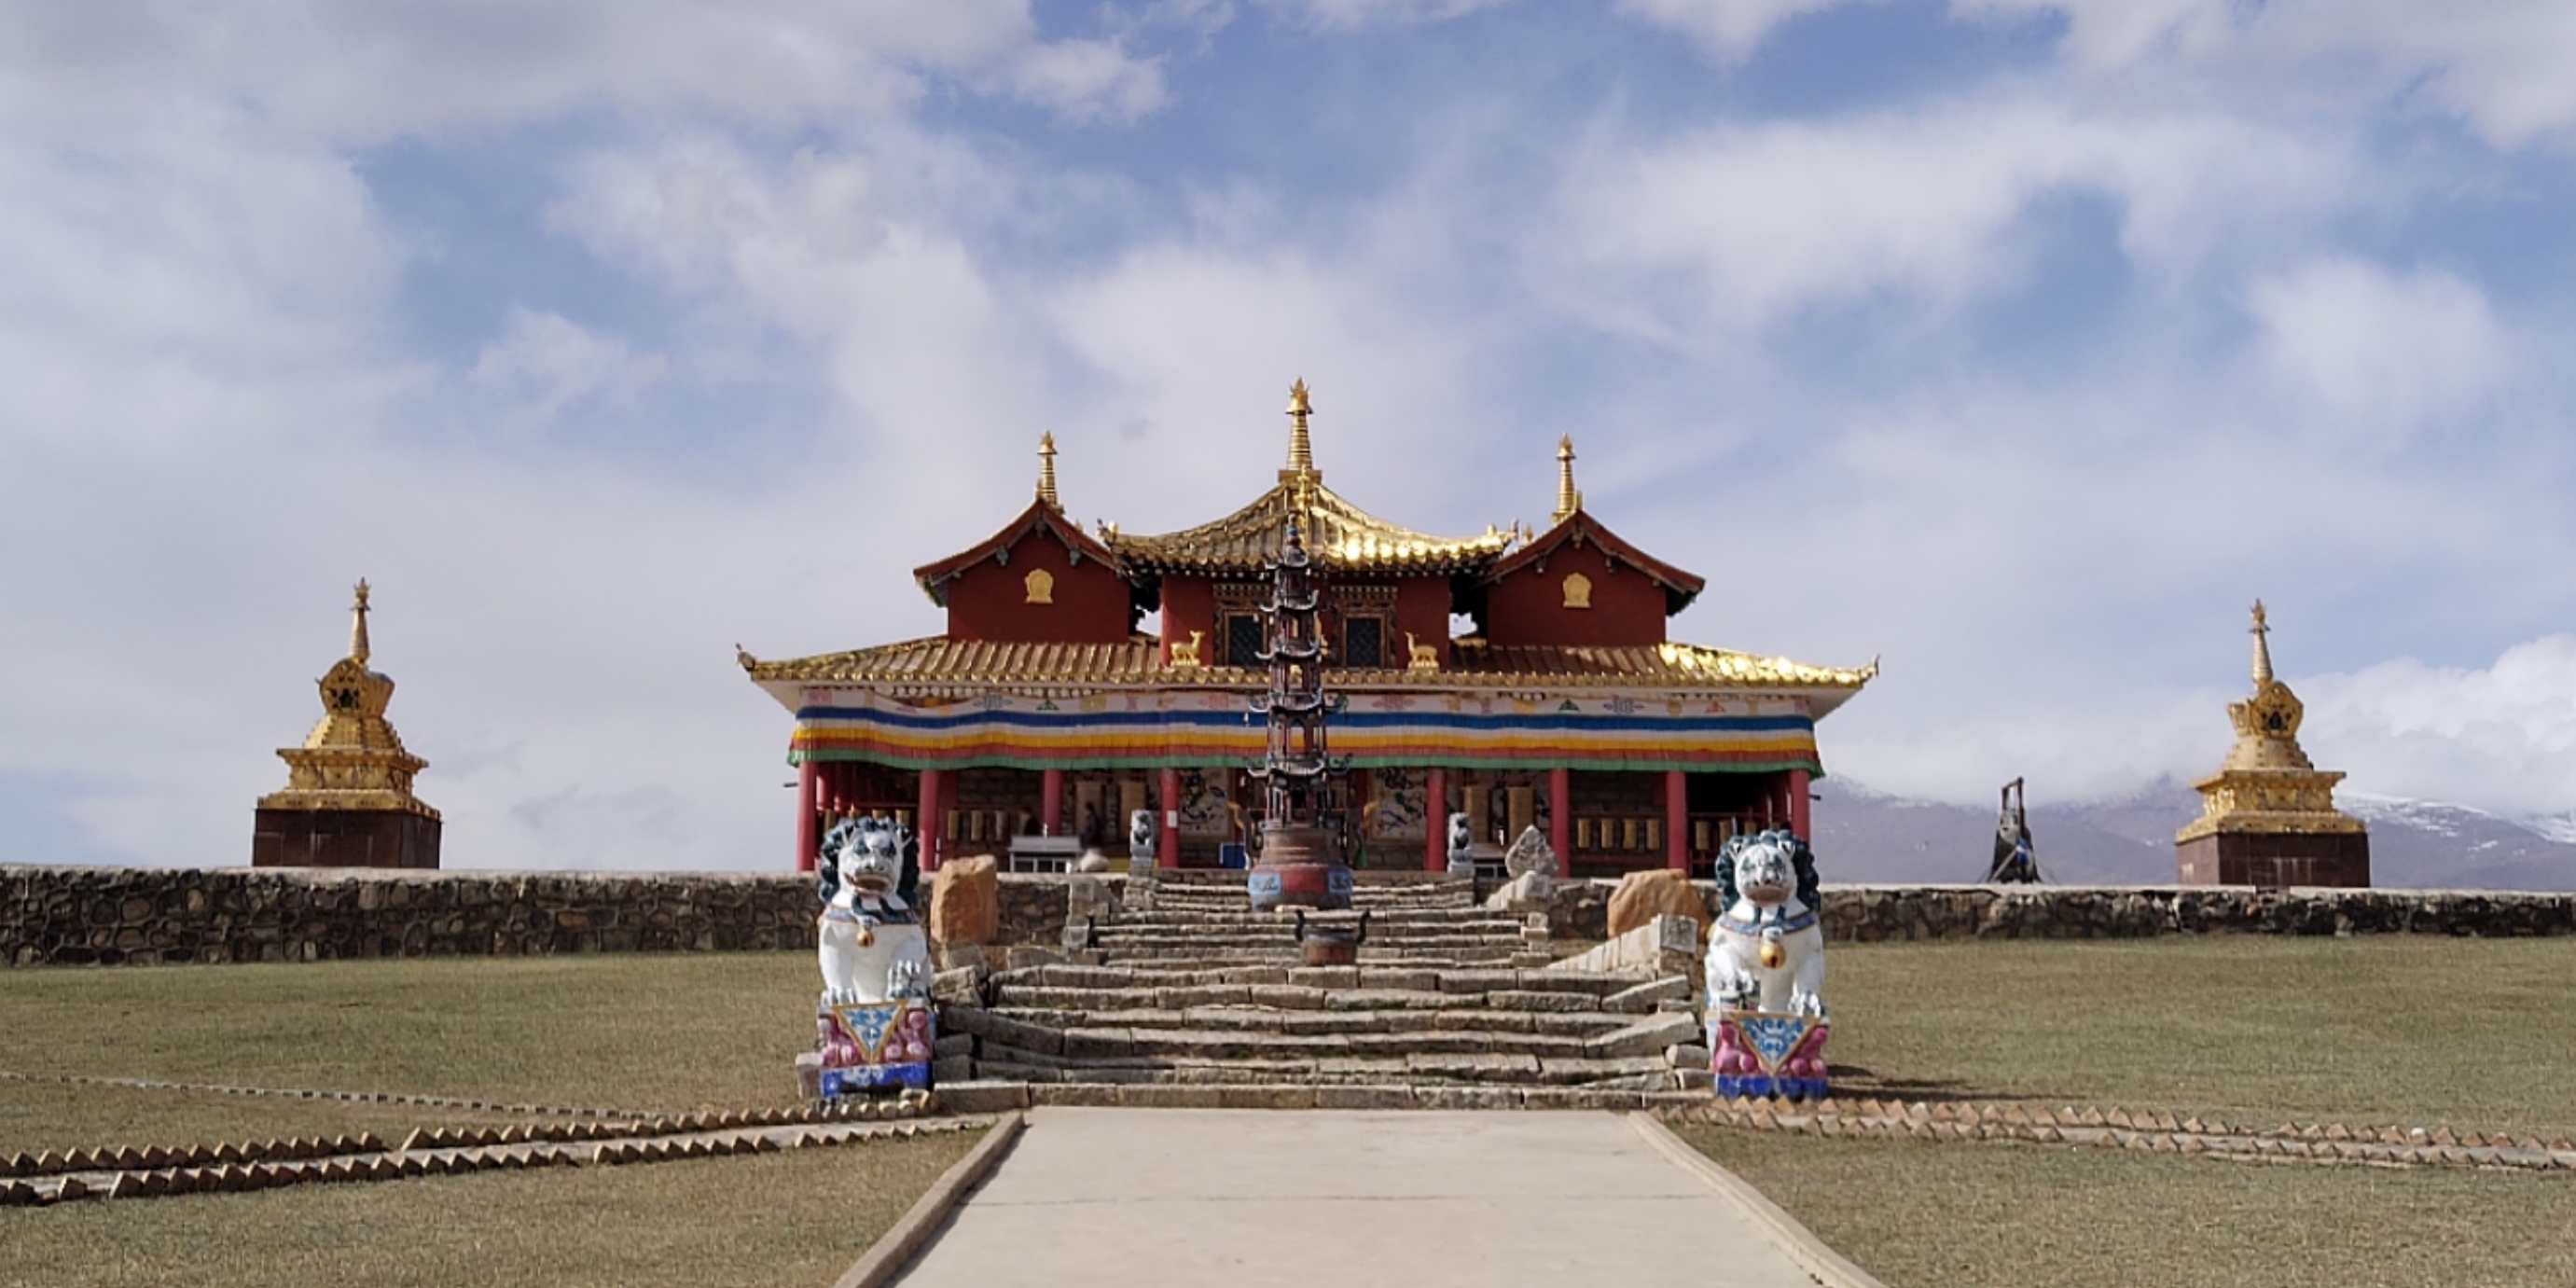 尼泊尔的庙